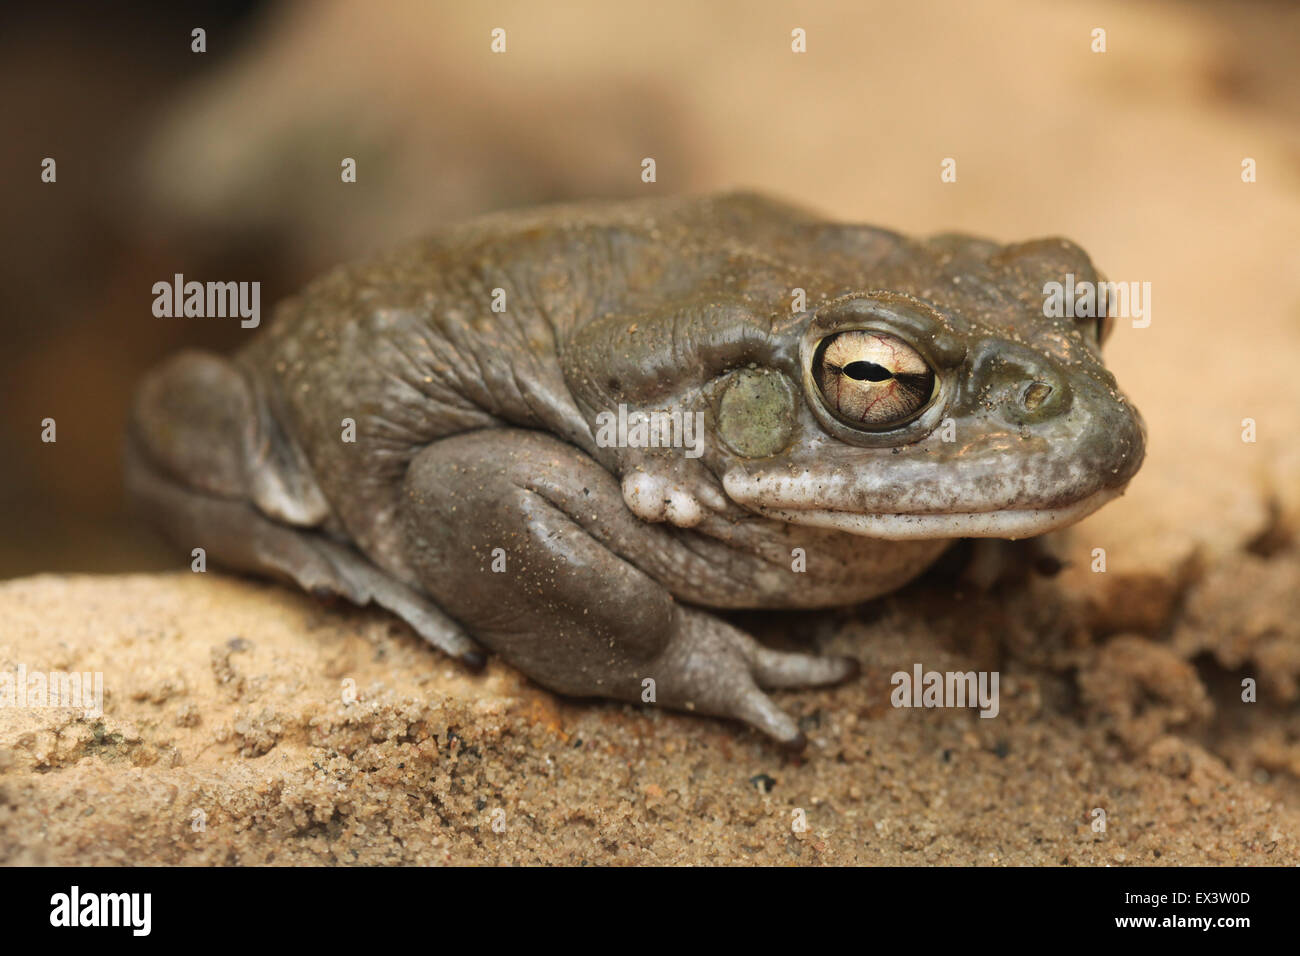 Il fiume Colorado toad (Incilius alvarius), noto anche come il deserto di Sonora toad presso lo Zoo di Francoforte in Frankfurt am Main, Germania. Foto Stock